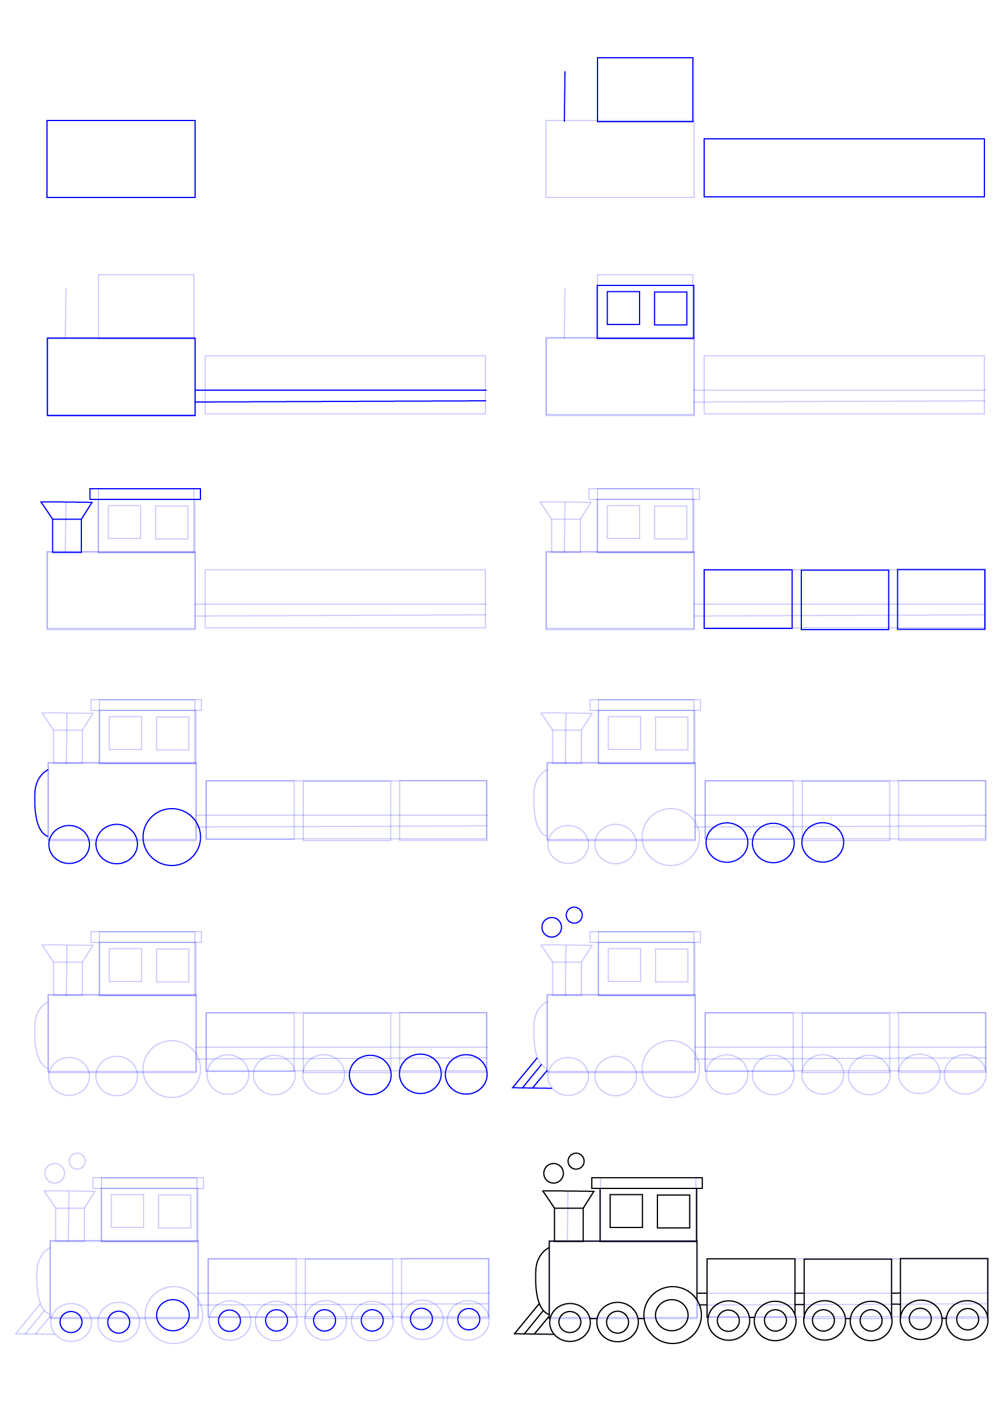 Yksinkertaiset vaiheet laivan piirtämiseen (1) piirustus